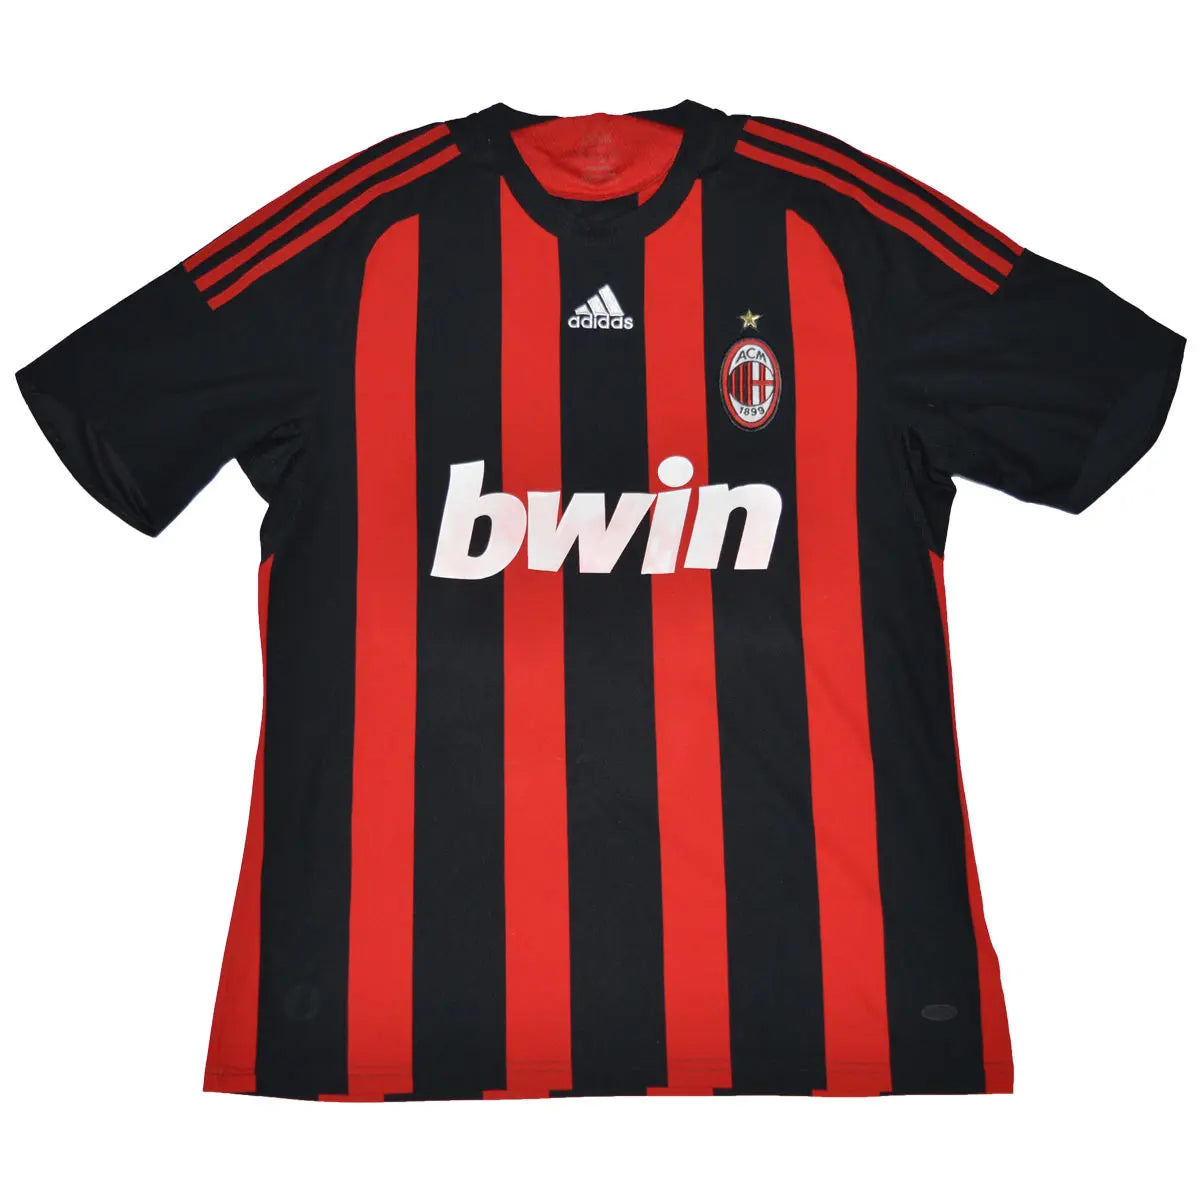 Maillot de foot rétro/vintage authentique rouge et noir adidas AC Milan domicile 2008 2009 Kaka